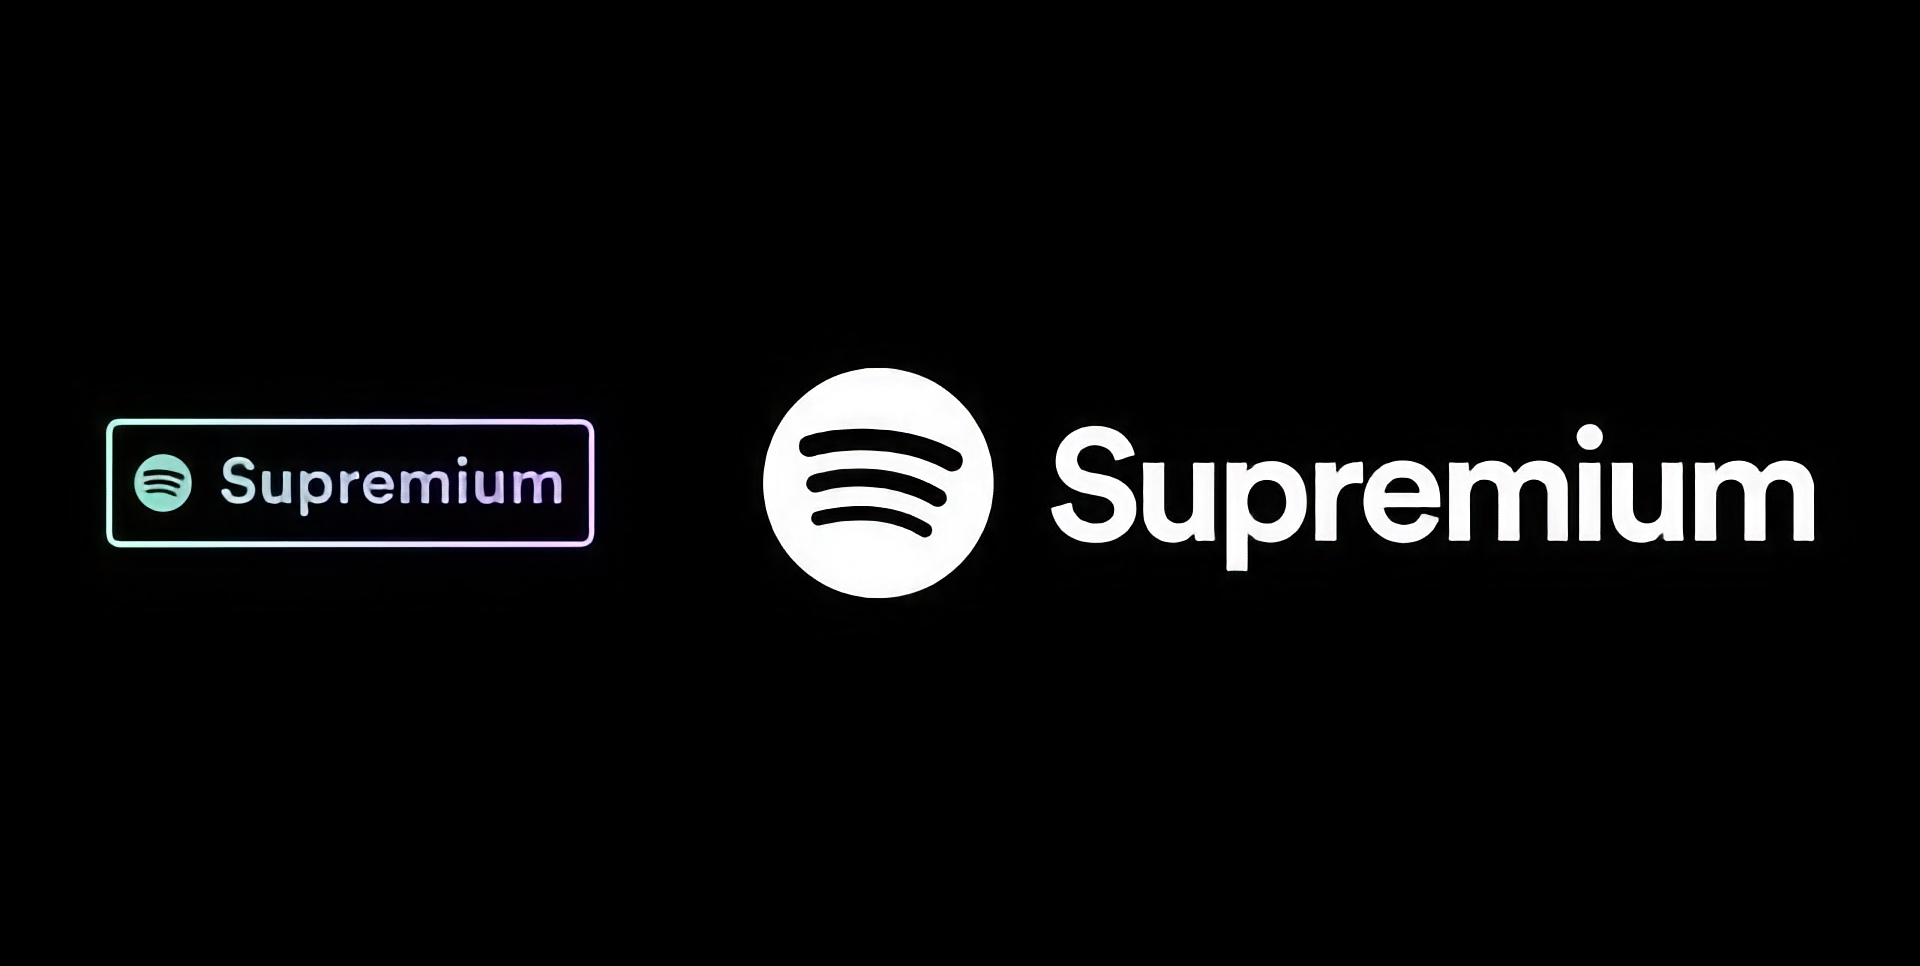 Spotify förbereder lanseringen av en Supremium-plan med stöd för Lossless audio och ett pris på 19 USD per månad